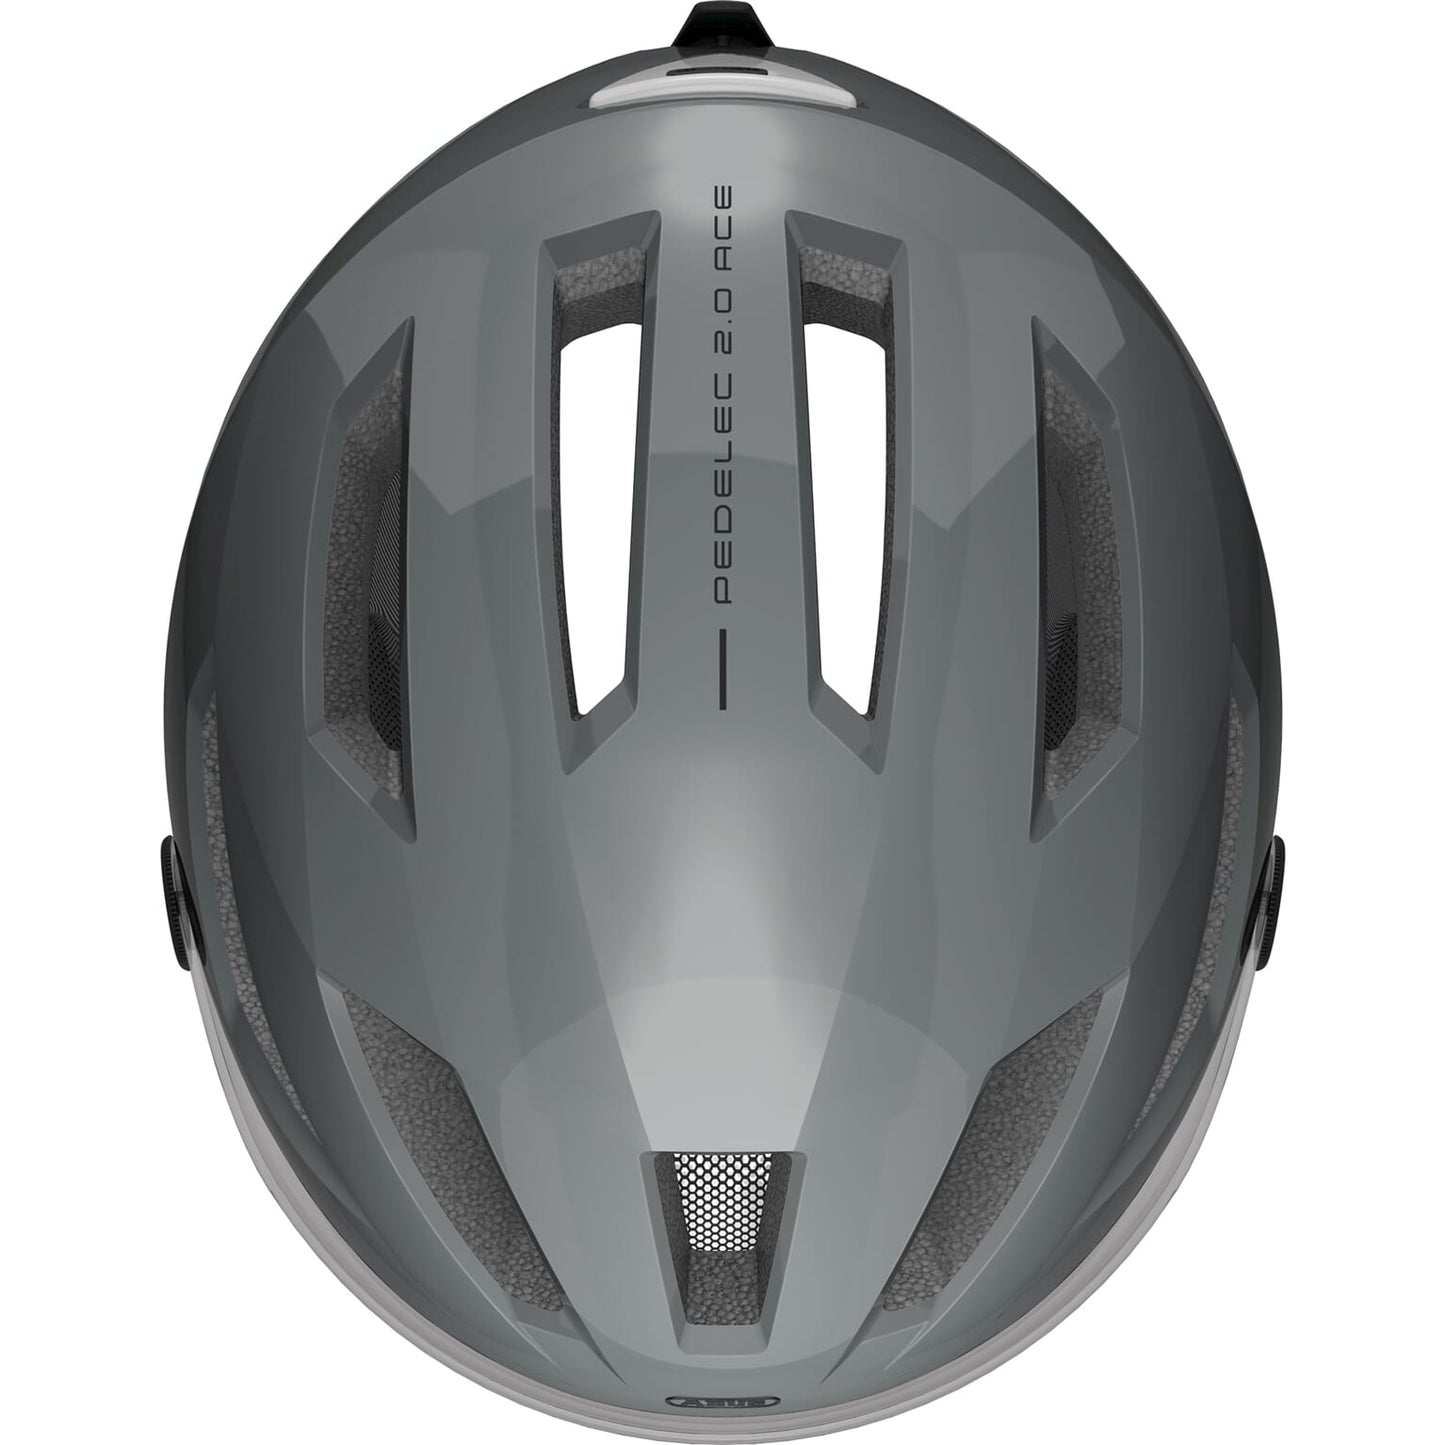 DE0102A Helm Pedelec 2.0 Ace Grey L